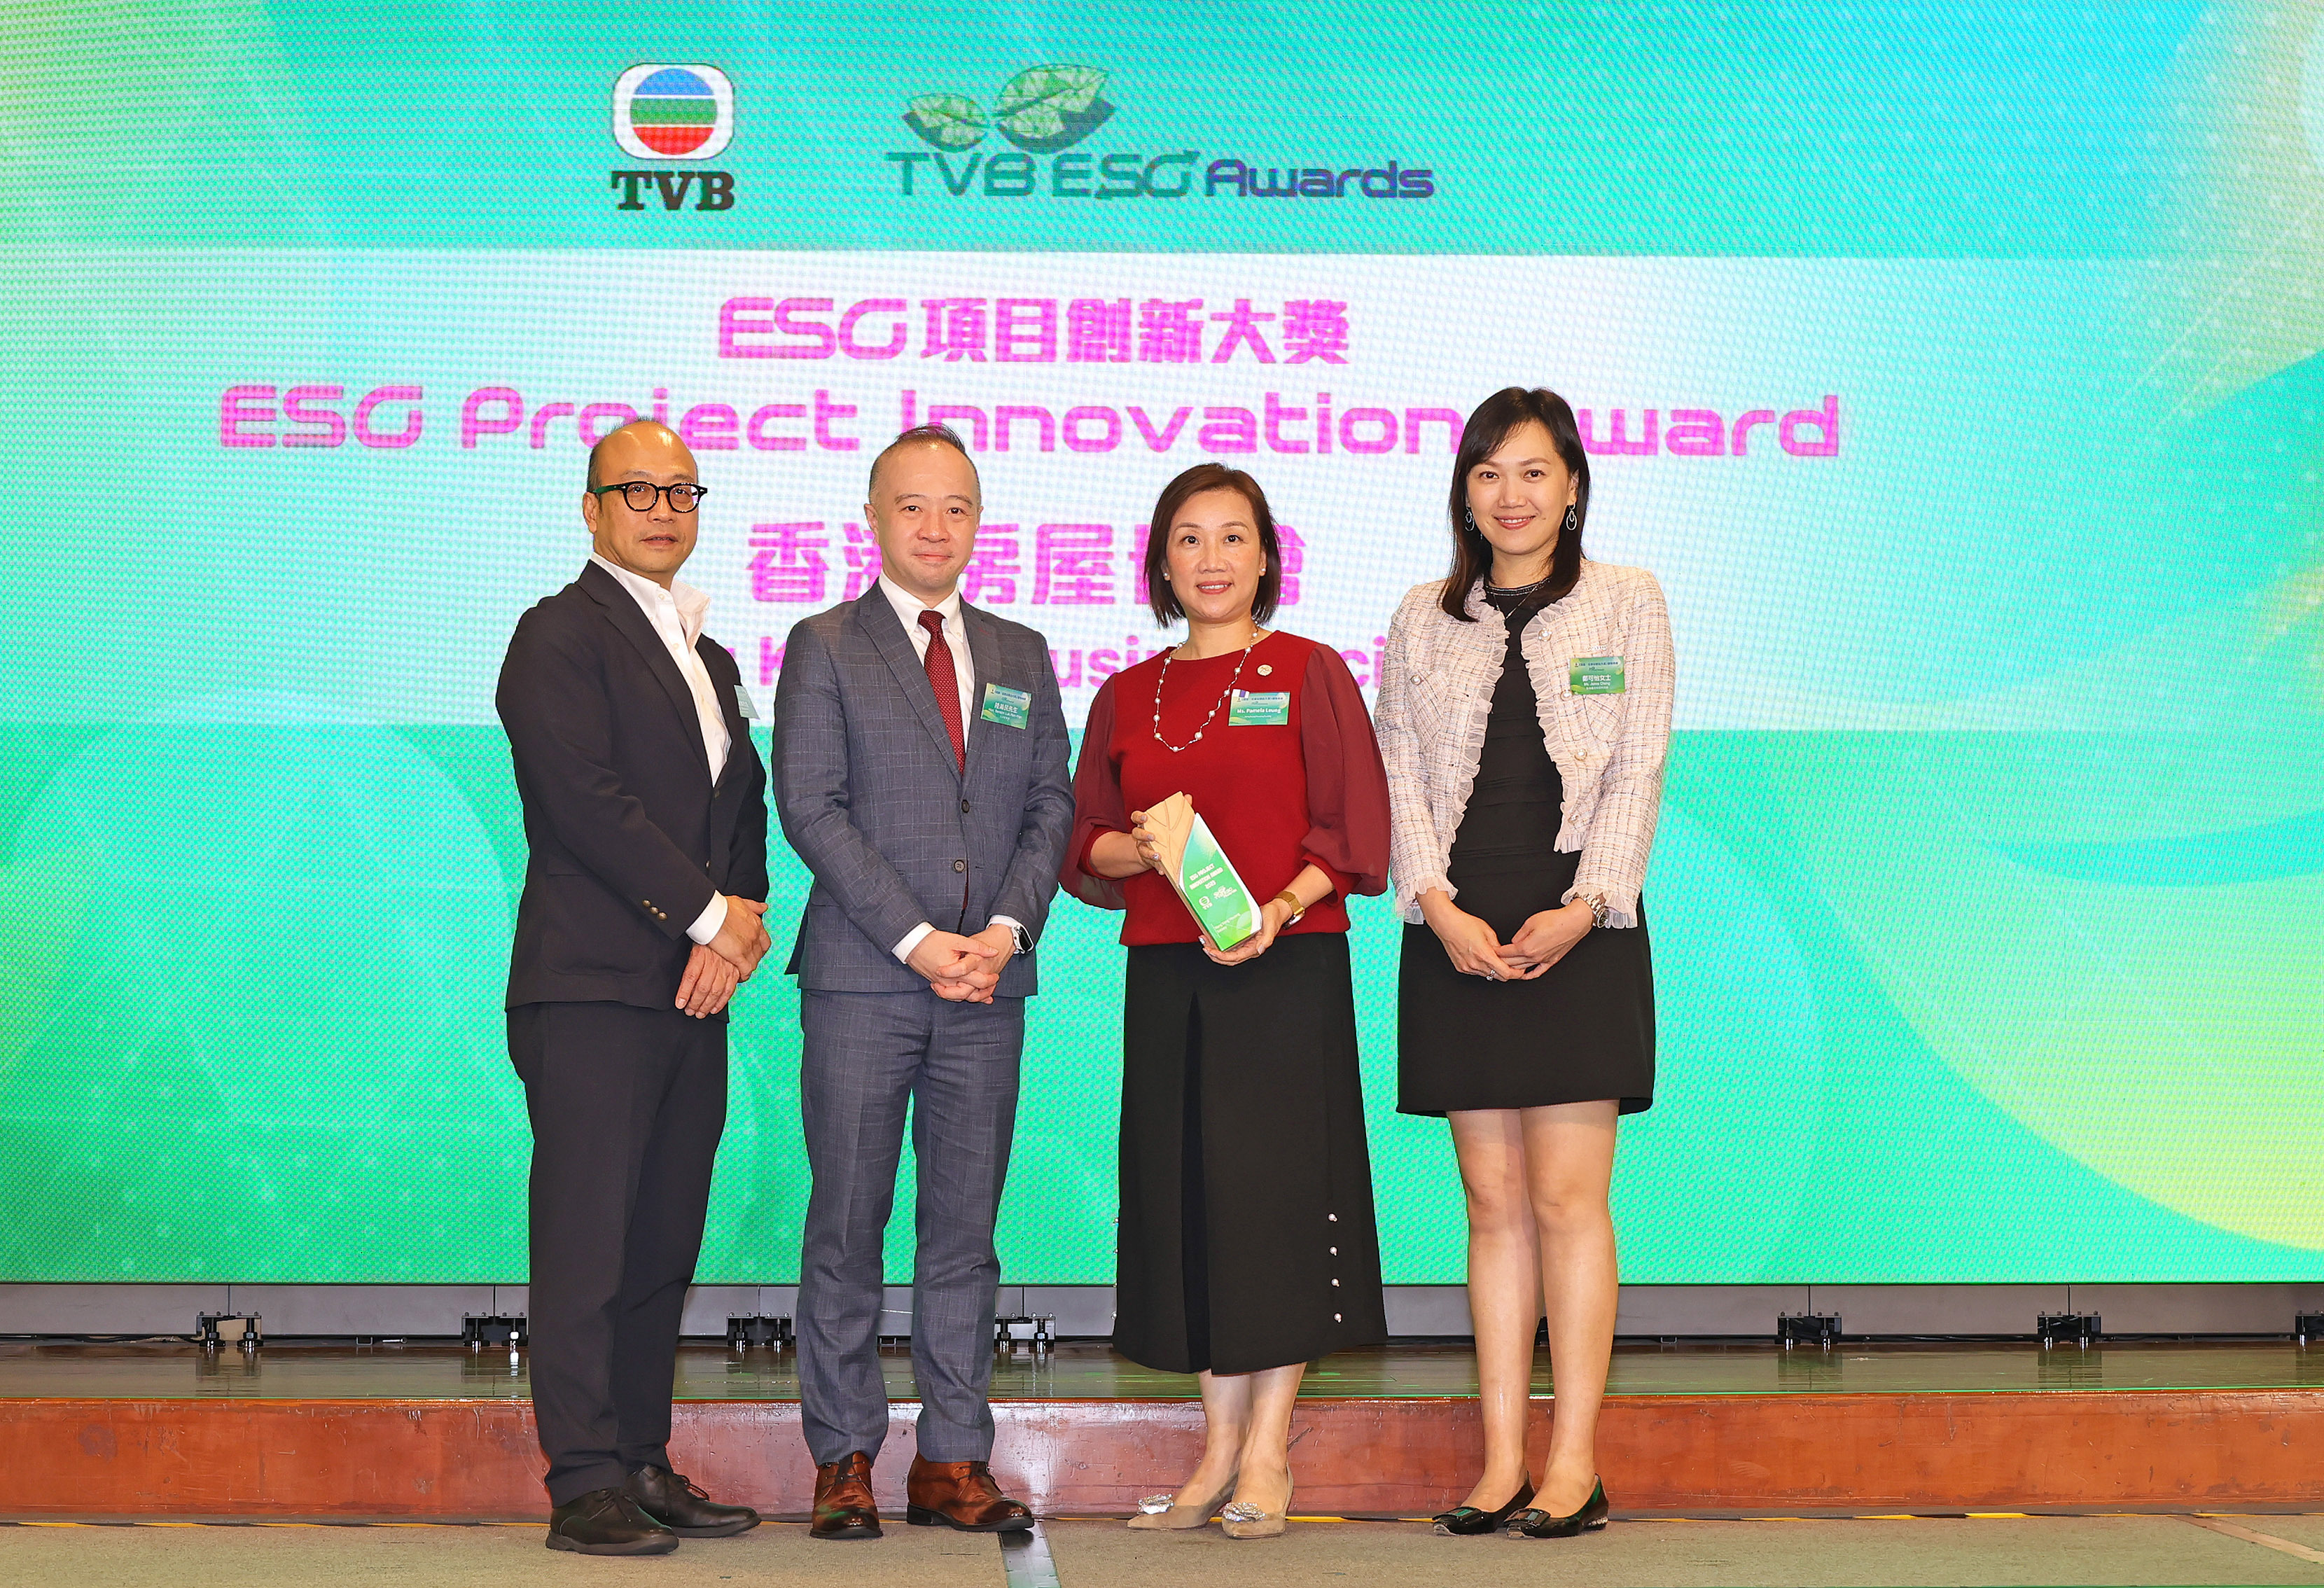 房协首度于电视广播有公司主办的《环境、社会及管治大奖》2023中荣获「ESG项目创新大奖」。